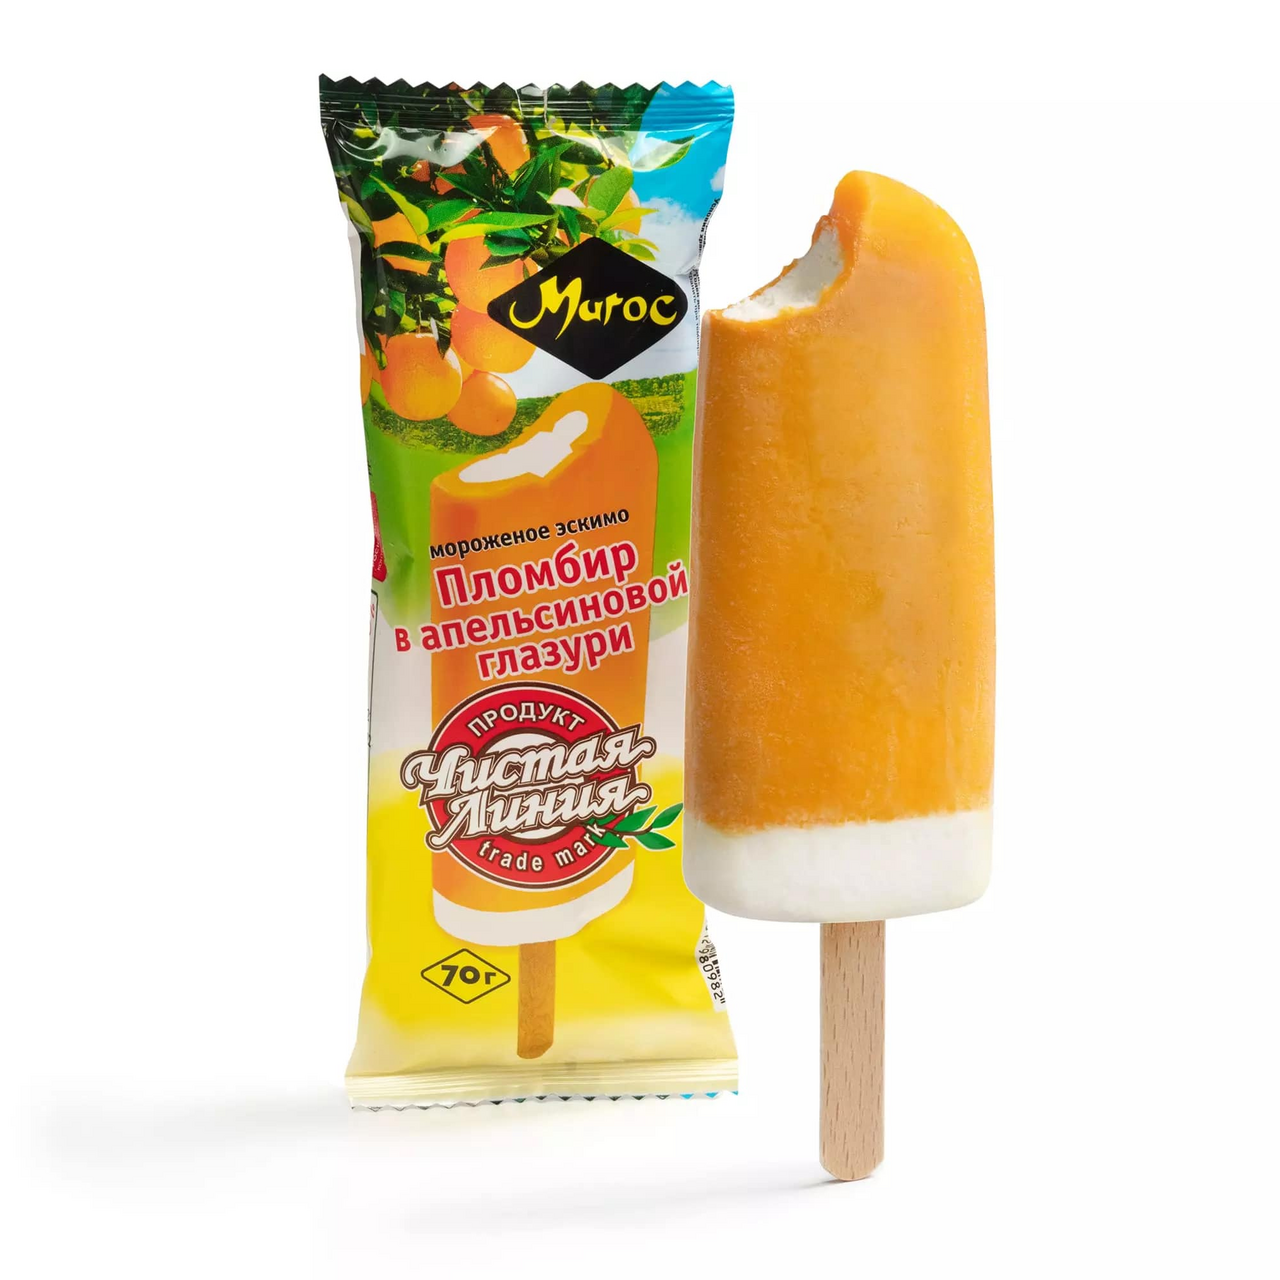 Мороженое Чистая Линия Пломбир ванильный в апельсиновой глазури, 70г купить  с доставкой на дом, цены в интернет-магазине